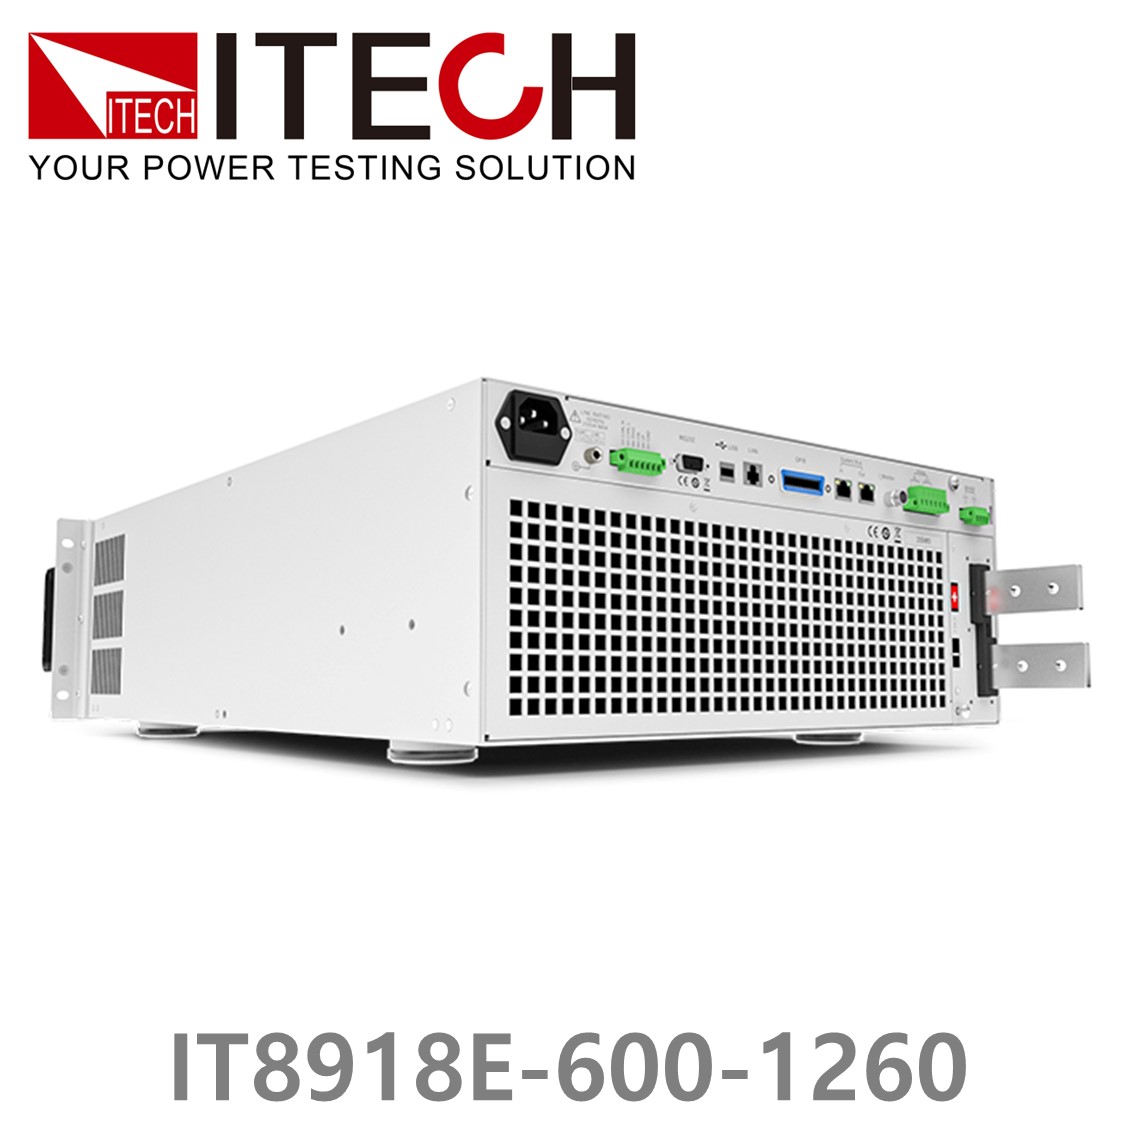 [ ITECH ] IT8918E-600-1260  고성능 고전력 DC 전자로드 600V/1260A/18kW (15U)